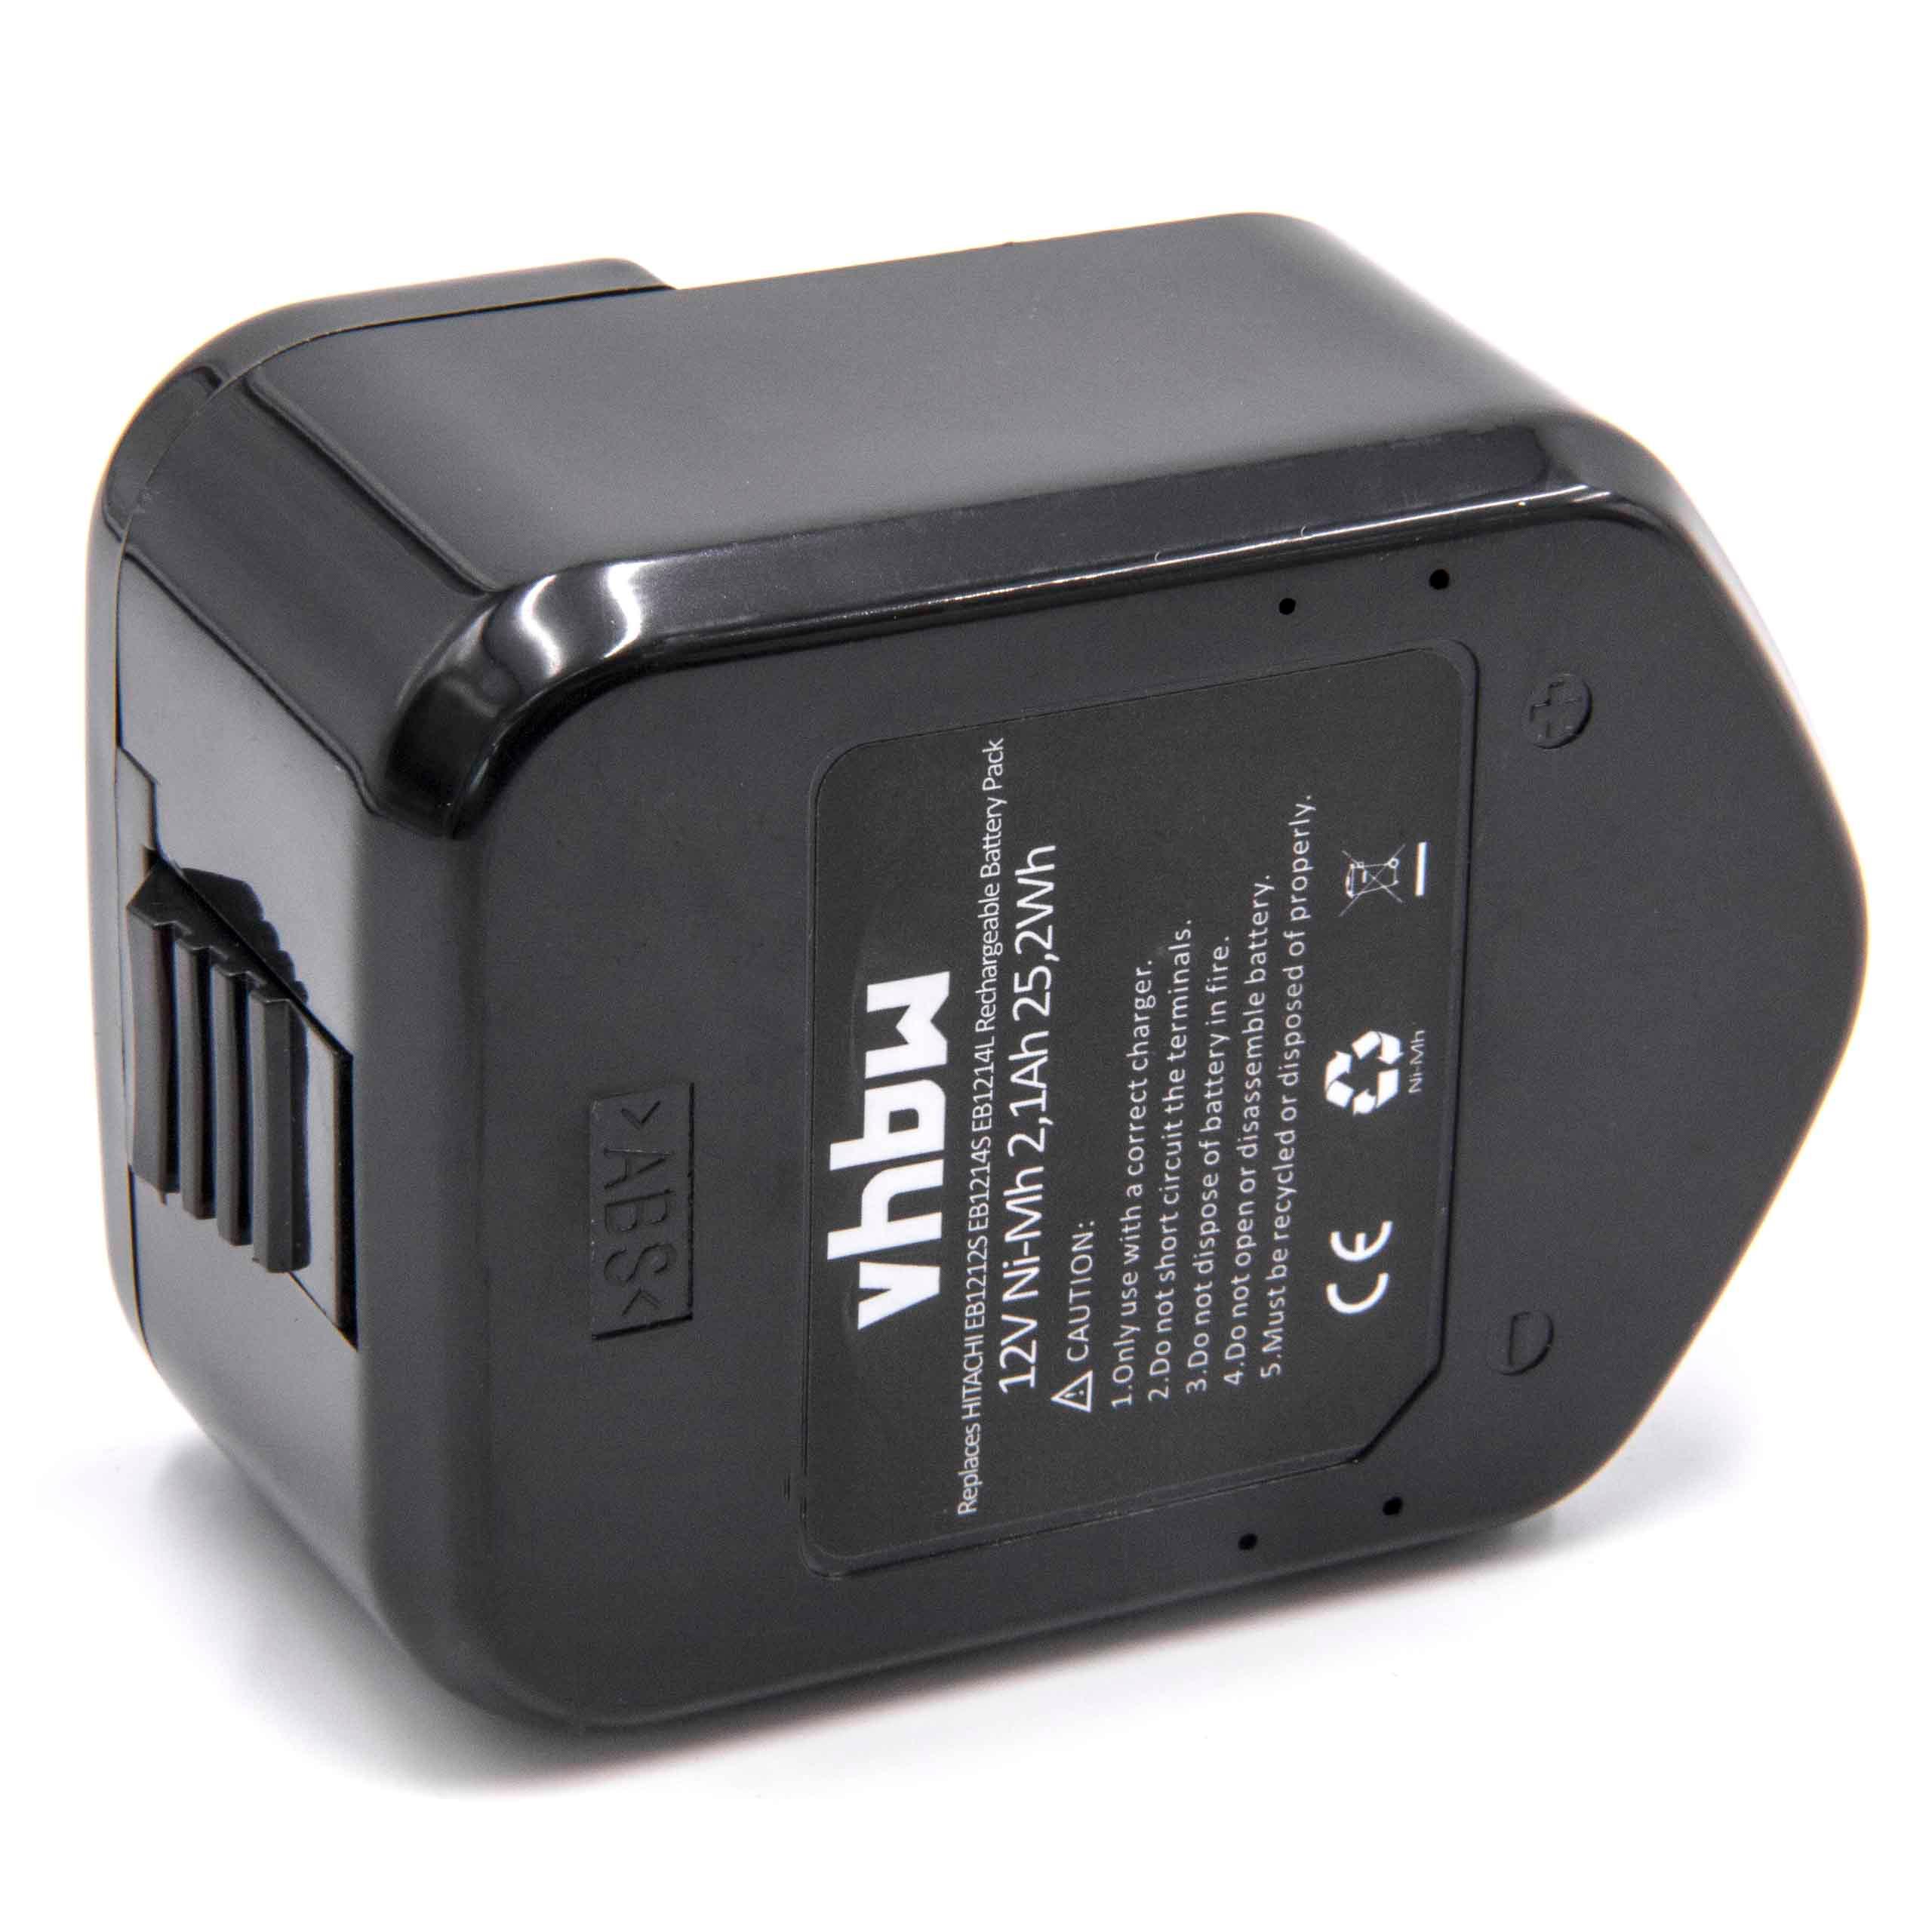 Batterie remplace Hitachi 320608, 320606, 320388, 320387, 320386 pour outil électrique - 2100 mAh, 12 V, NiMH